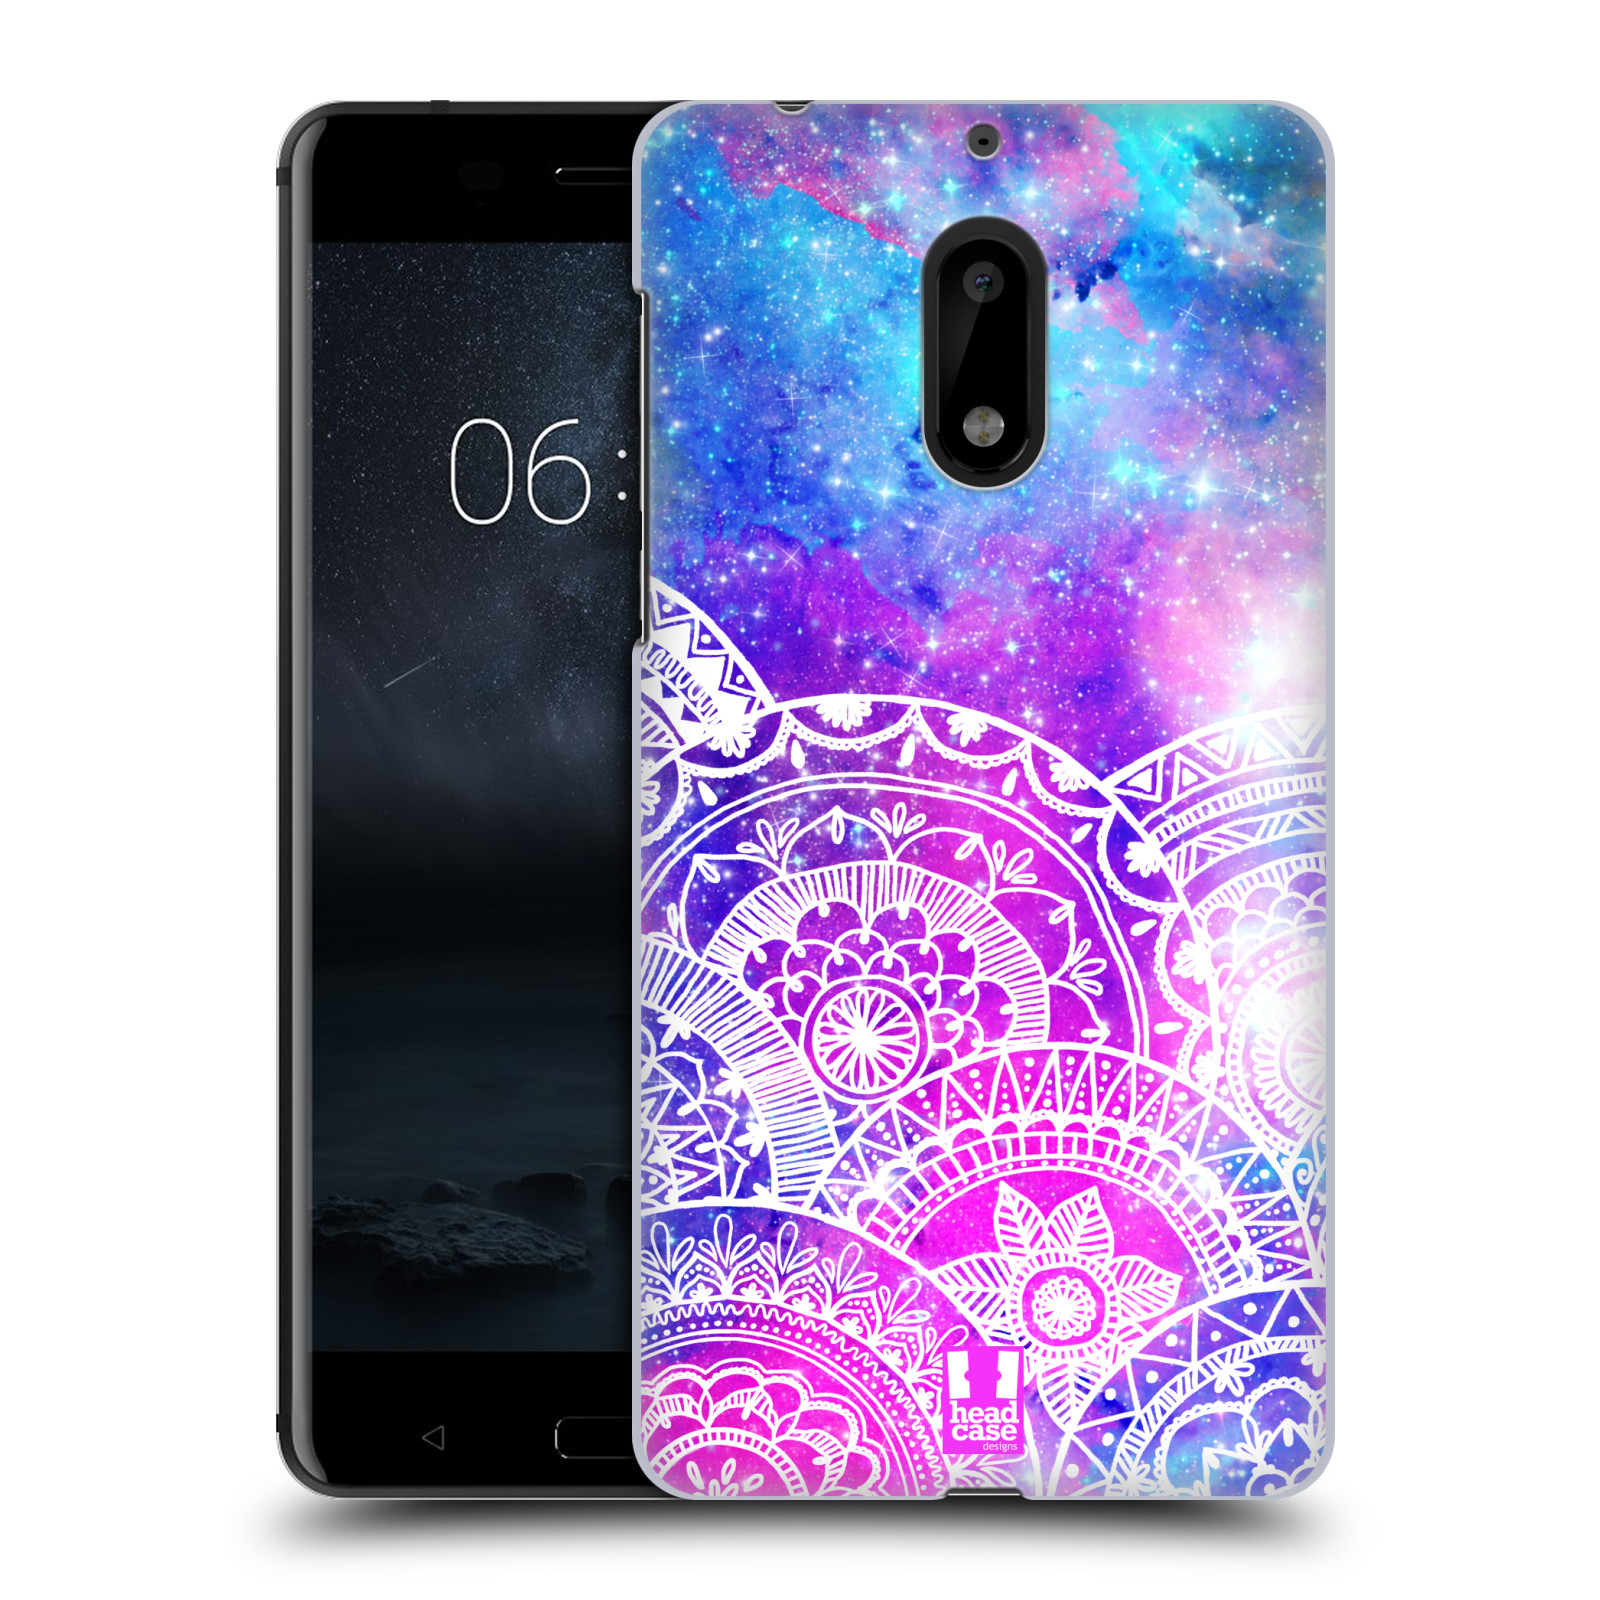 Pouzdro na mobil Nokia 6 - HEAD CASE - Mandala nekonečná galaxie